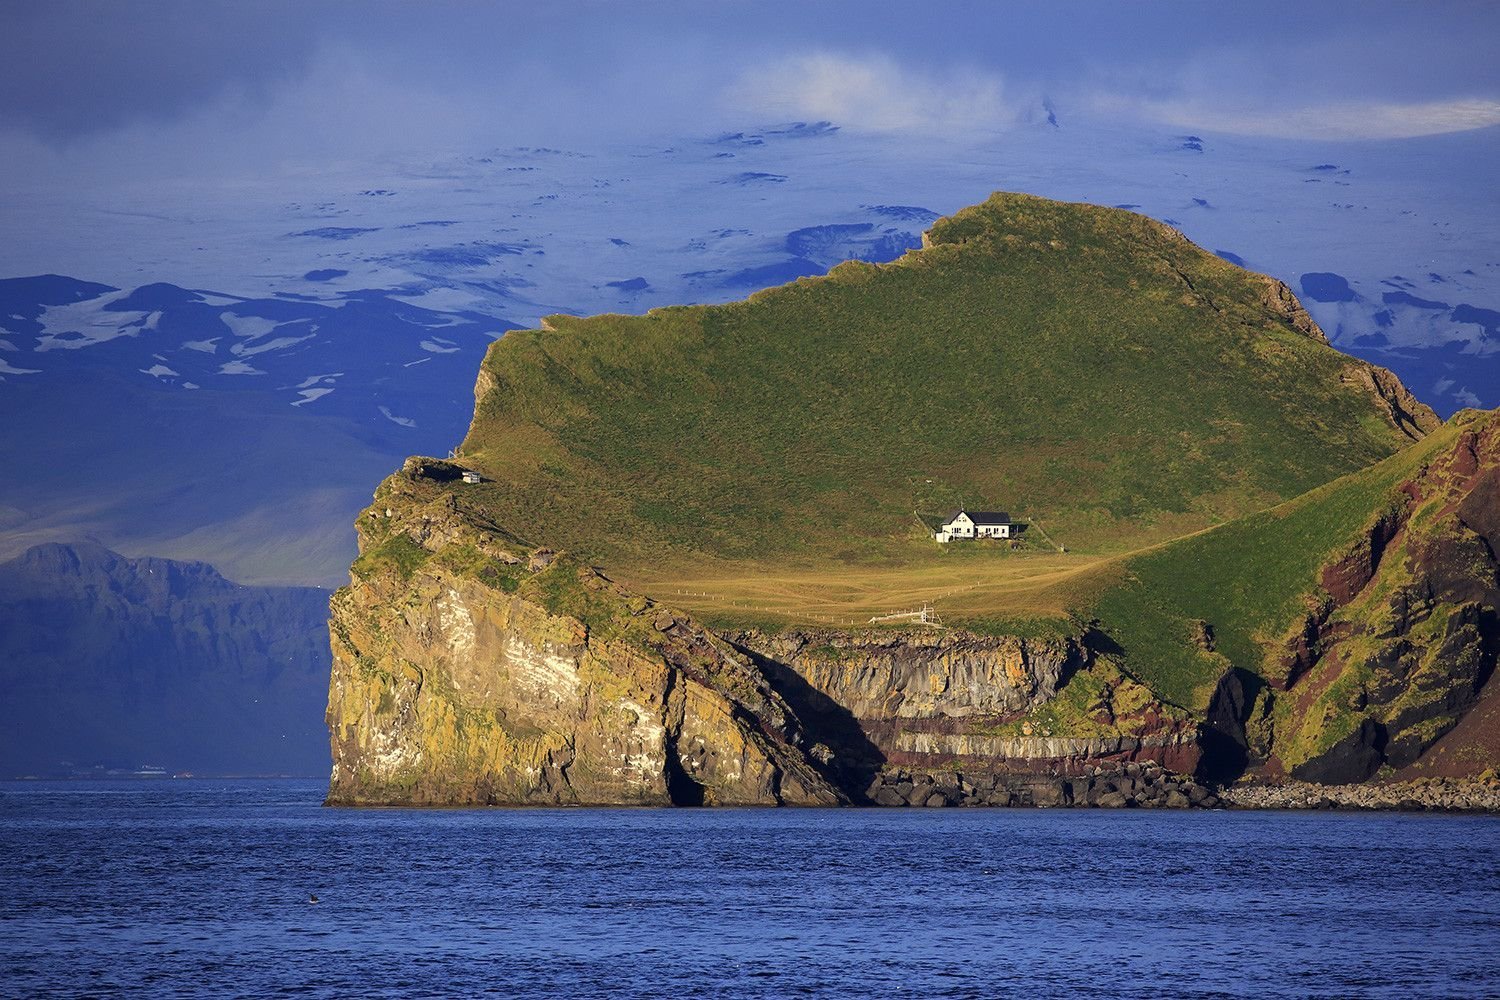 Остров Эллидаэй Исландия. Остров Эдлидаэй в Исландии. Дом на острове Эллидаэй Исландия. Остров Вестманнаэйяр Исландия. The only island